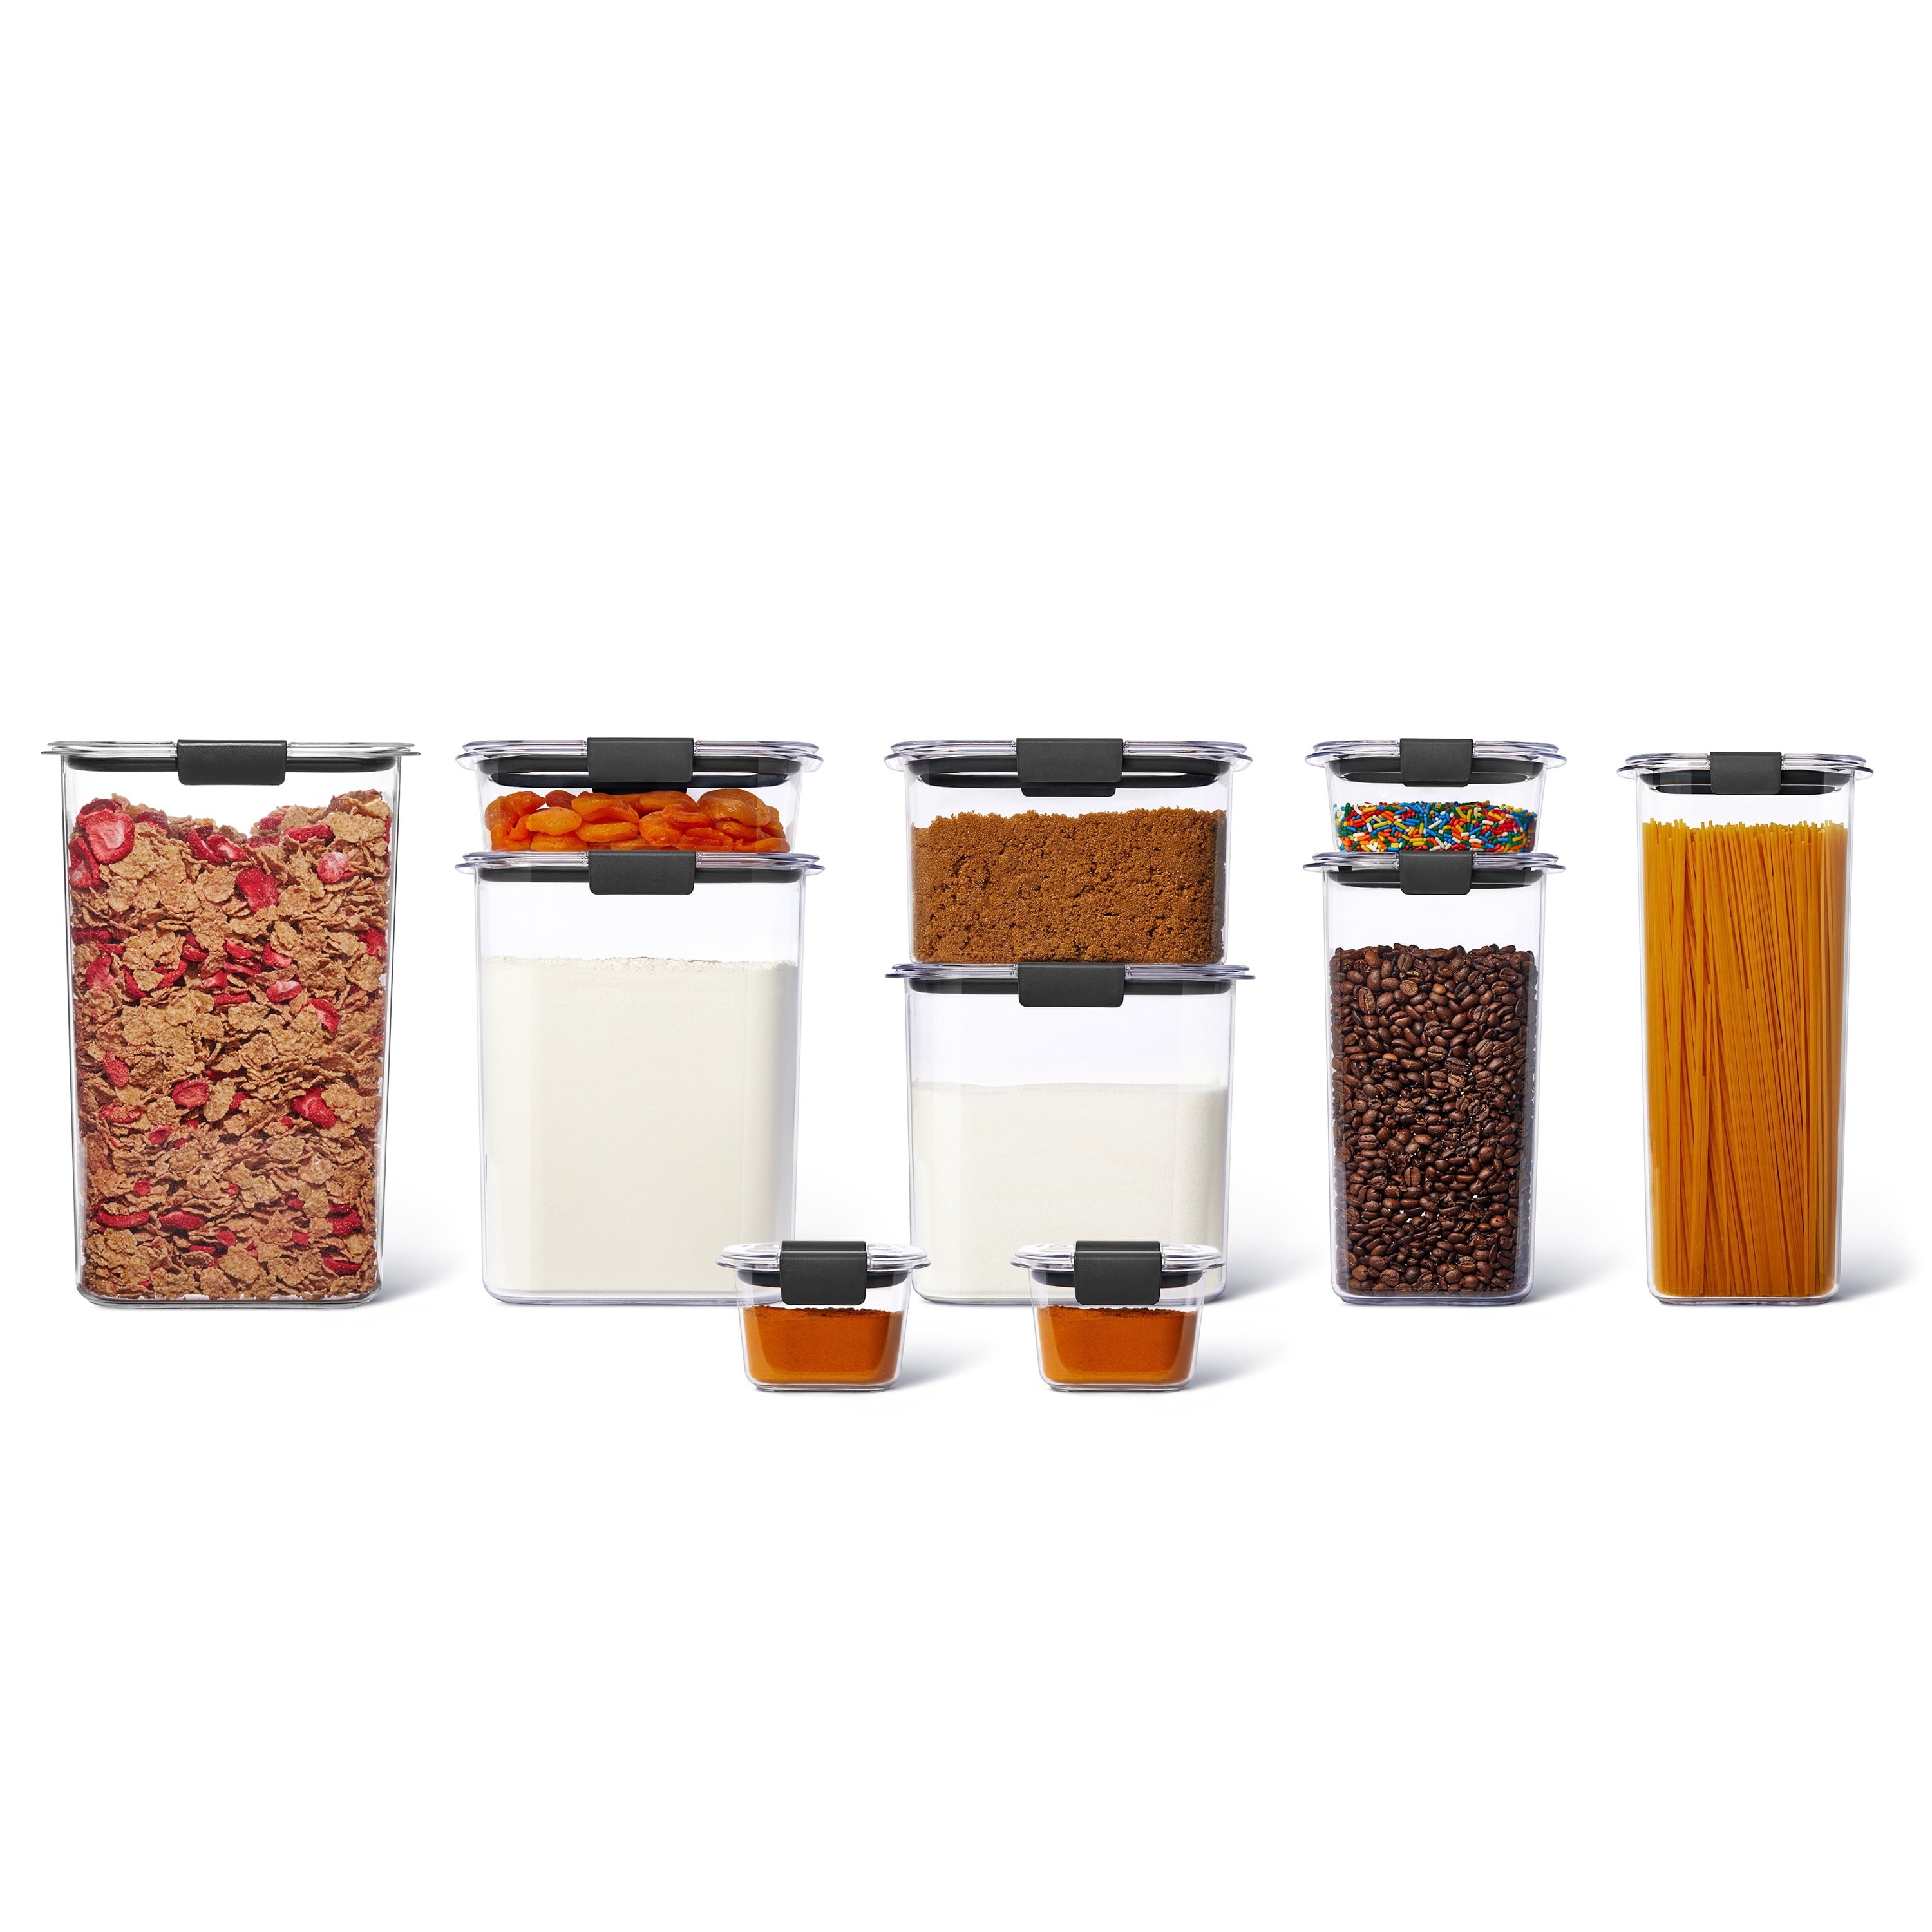 rubbermaid brilliance food storage lid